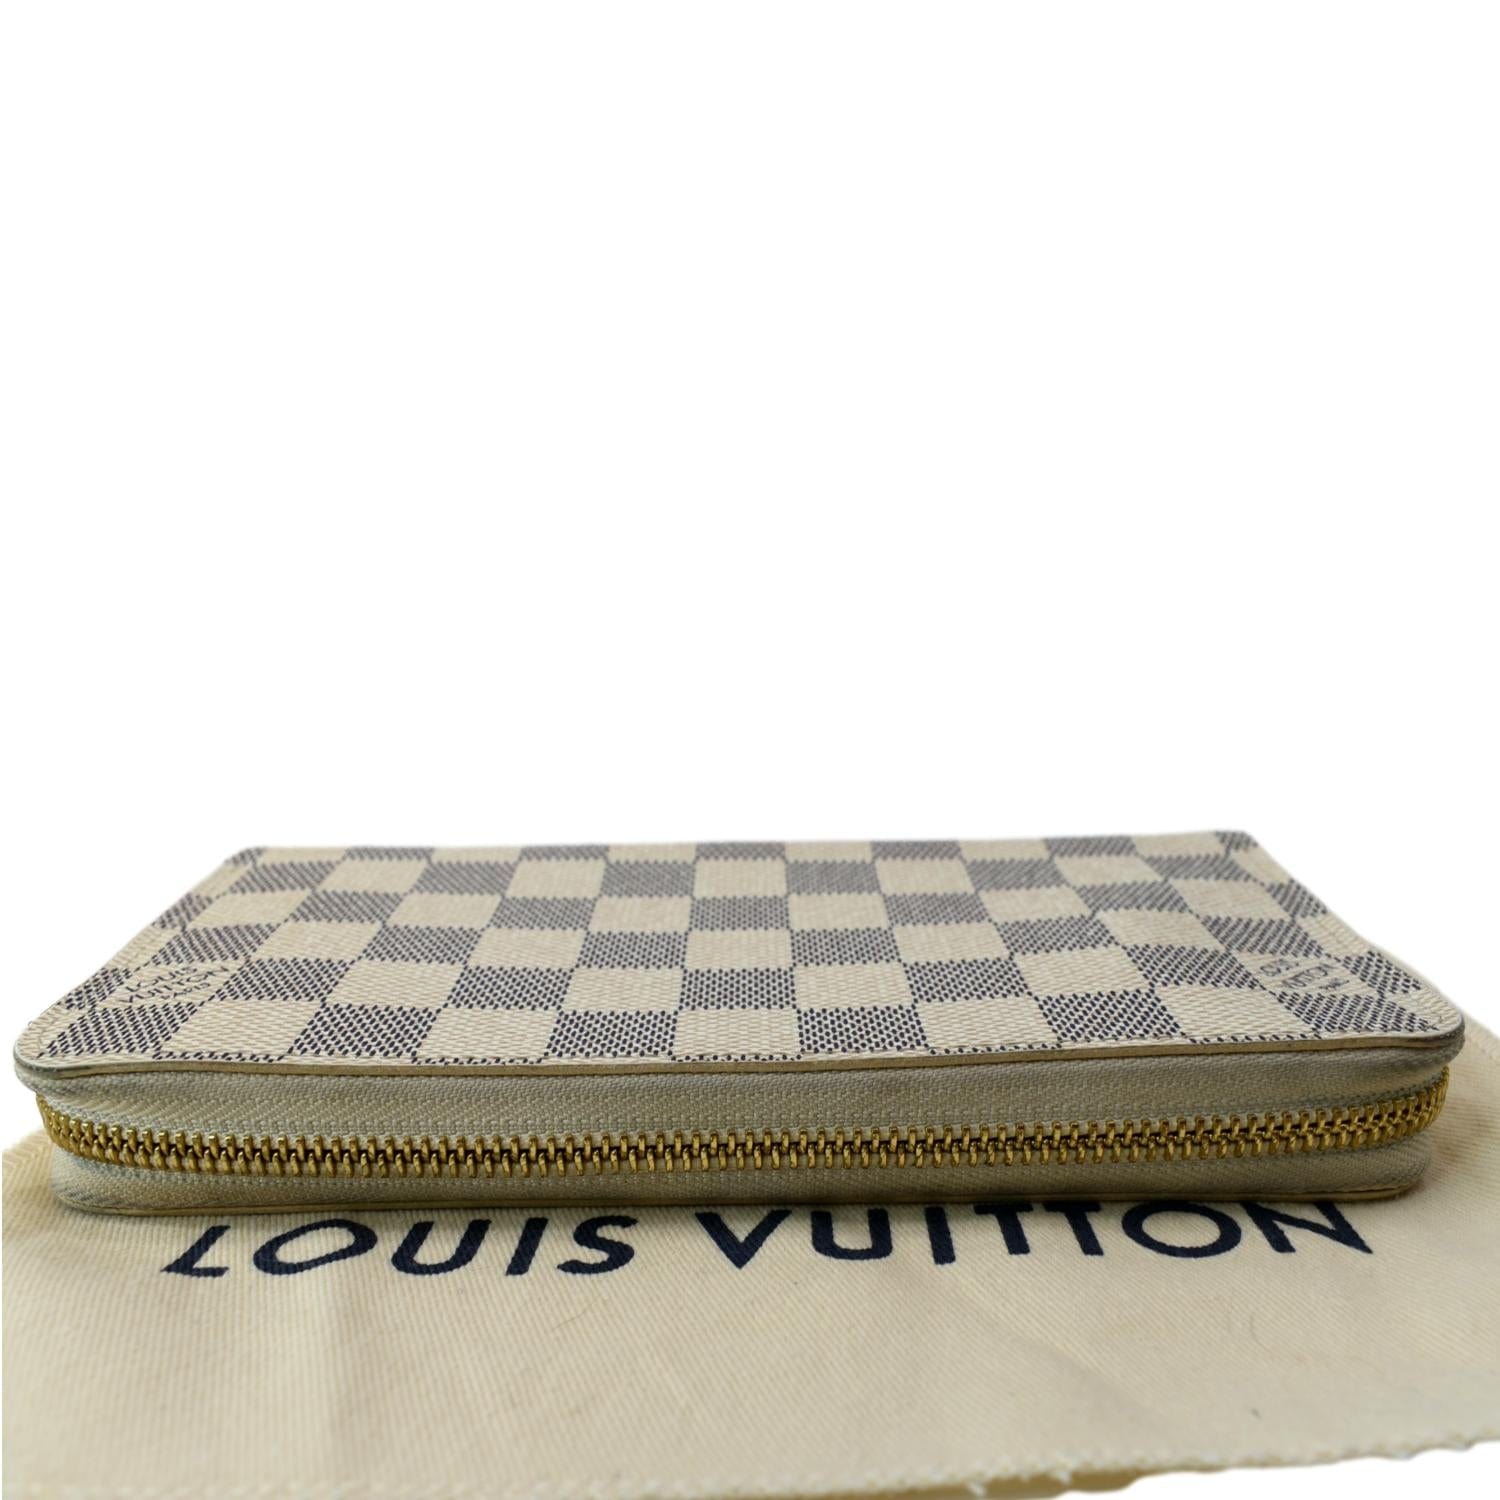 Louis Vuitton Damier Azur Canvas Zippy Compact Wallet Louis Vuitton